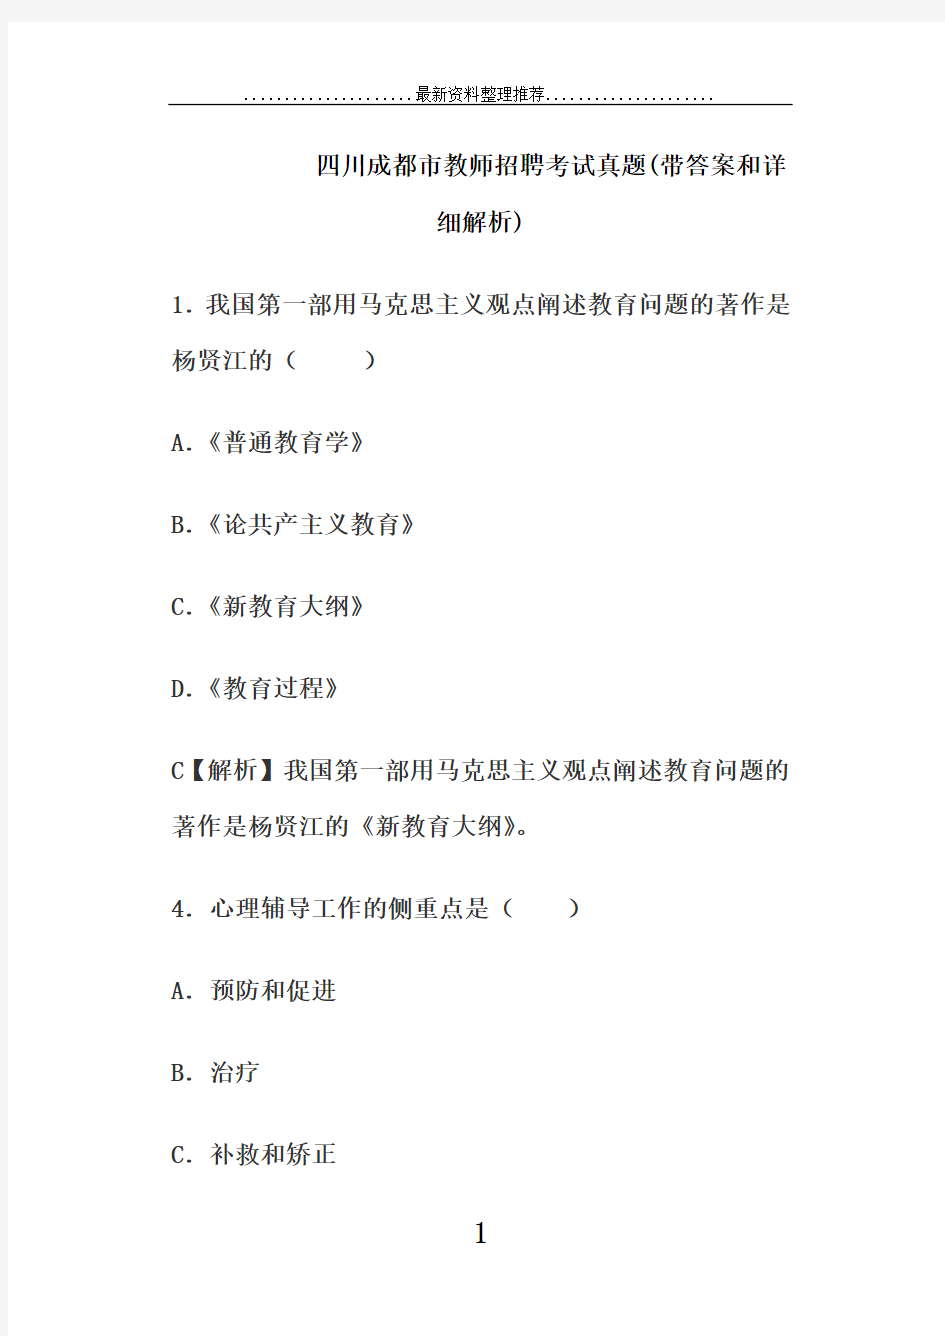 四川成都市教师招聘考试真题(带答案和详细解析)